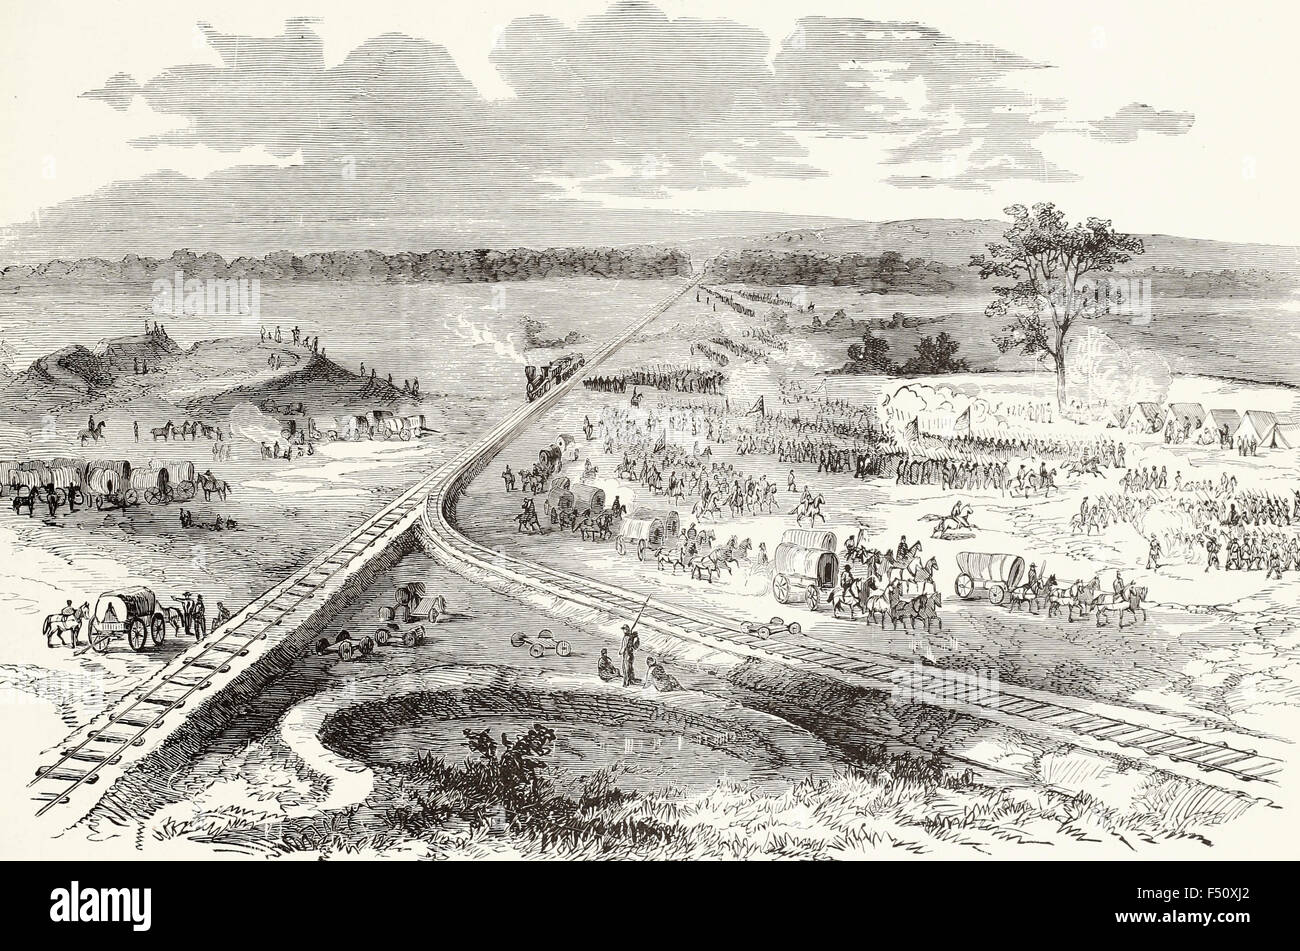 La guerra in Virginia - Hooker generale dell'esercito di marche passato, Manassas, Virginia - Giugno 1863. USA LA GUERRA CIVILE Foto Stock